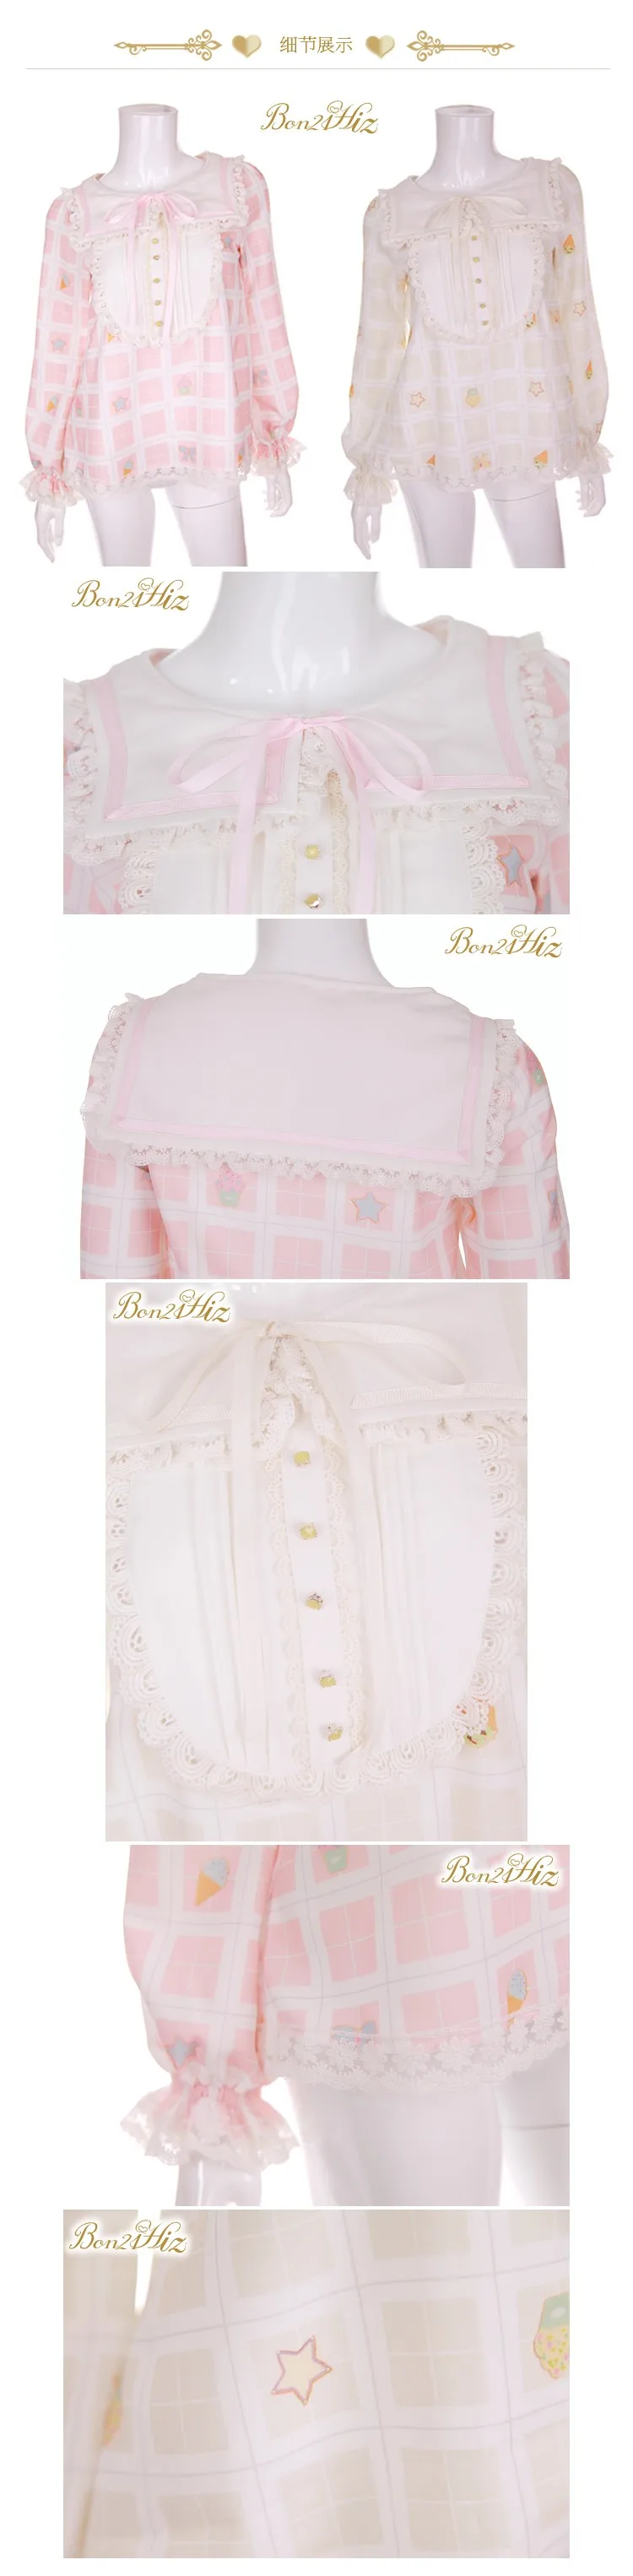 Платье принцессы, милая блузка Лолита BoBON21 дизайн с большим бантом, в клетку розовый кремовый цвет: желтый, темно-синяя шифоновая блузка с воротником T1253